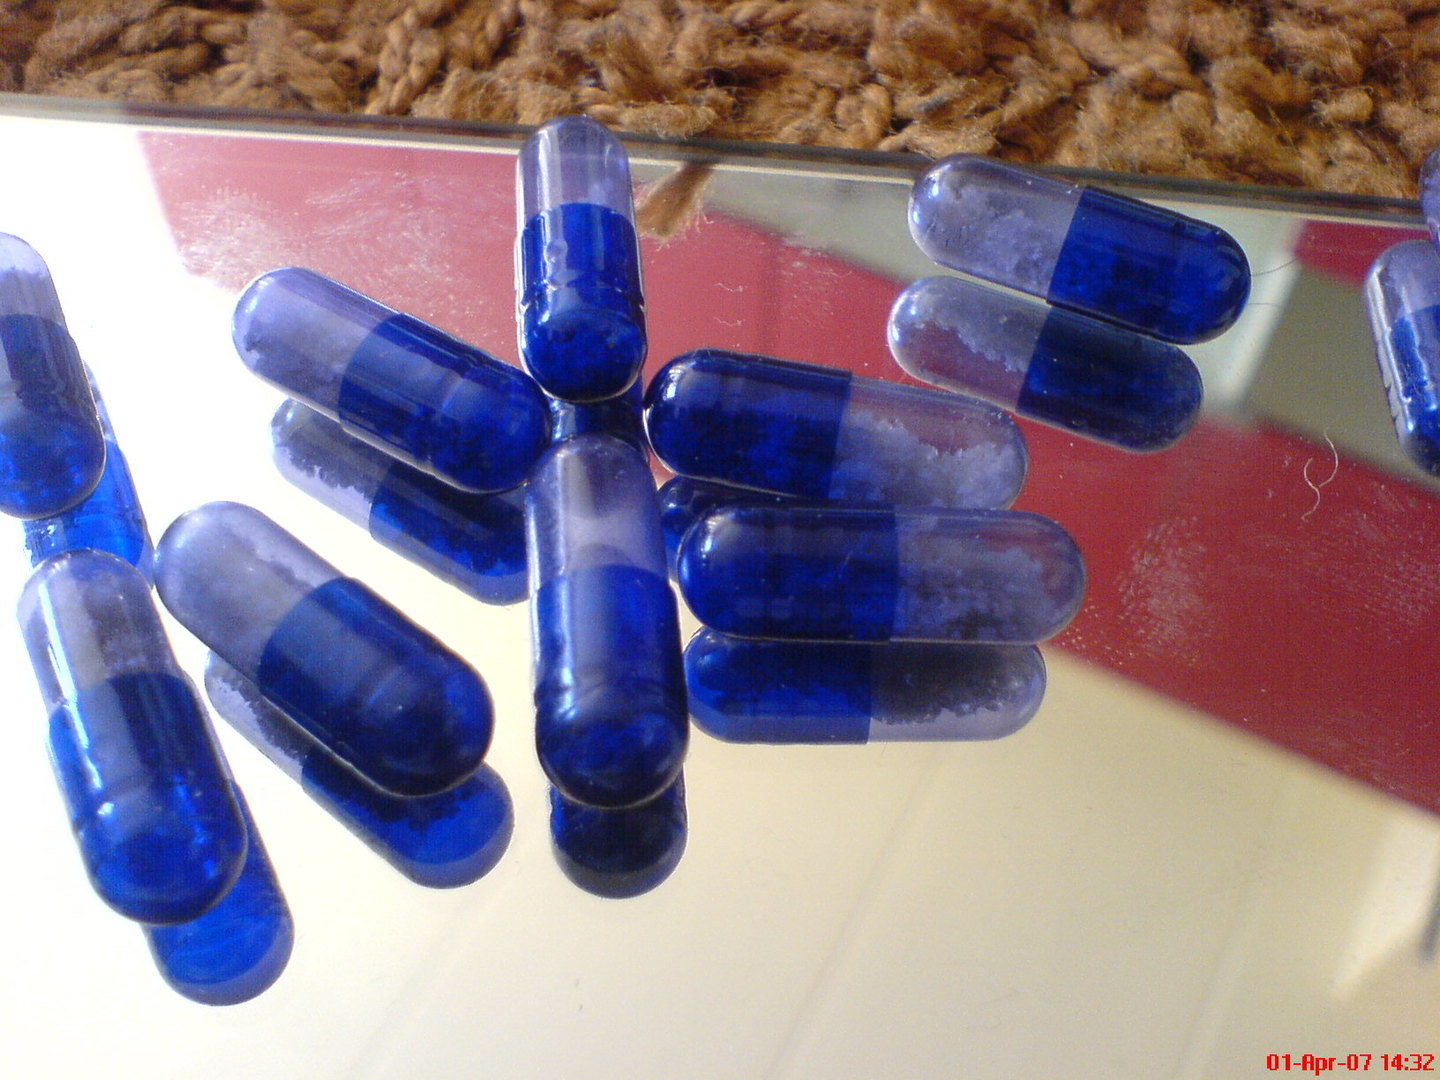 El MDMA (metilendioximetanfetamina) fue sintetizado de forma accidental en 1912.